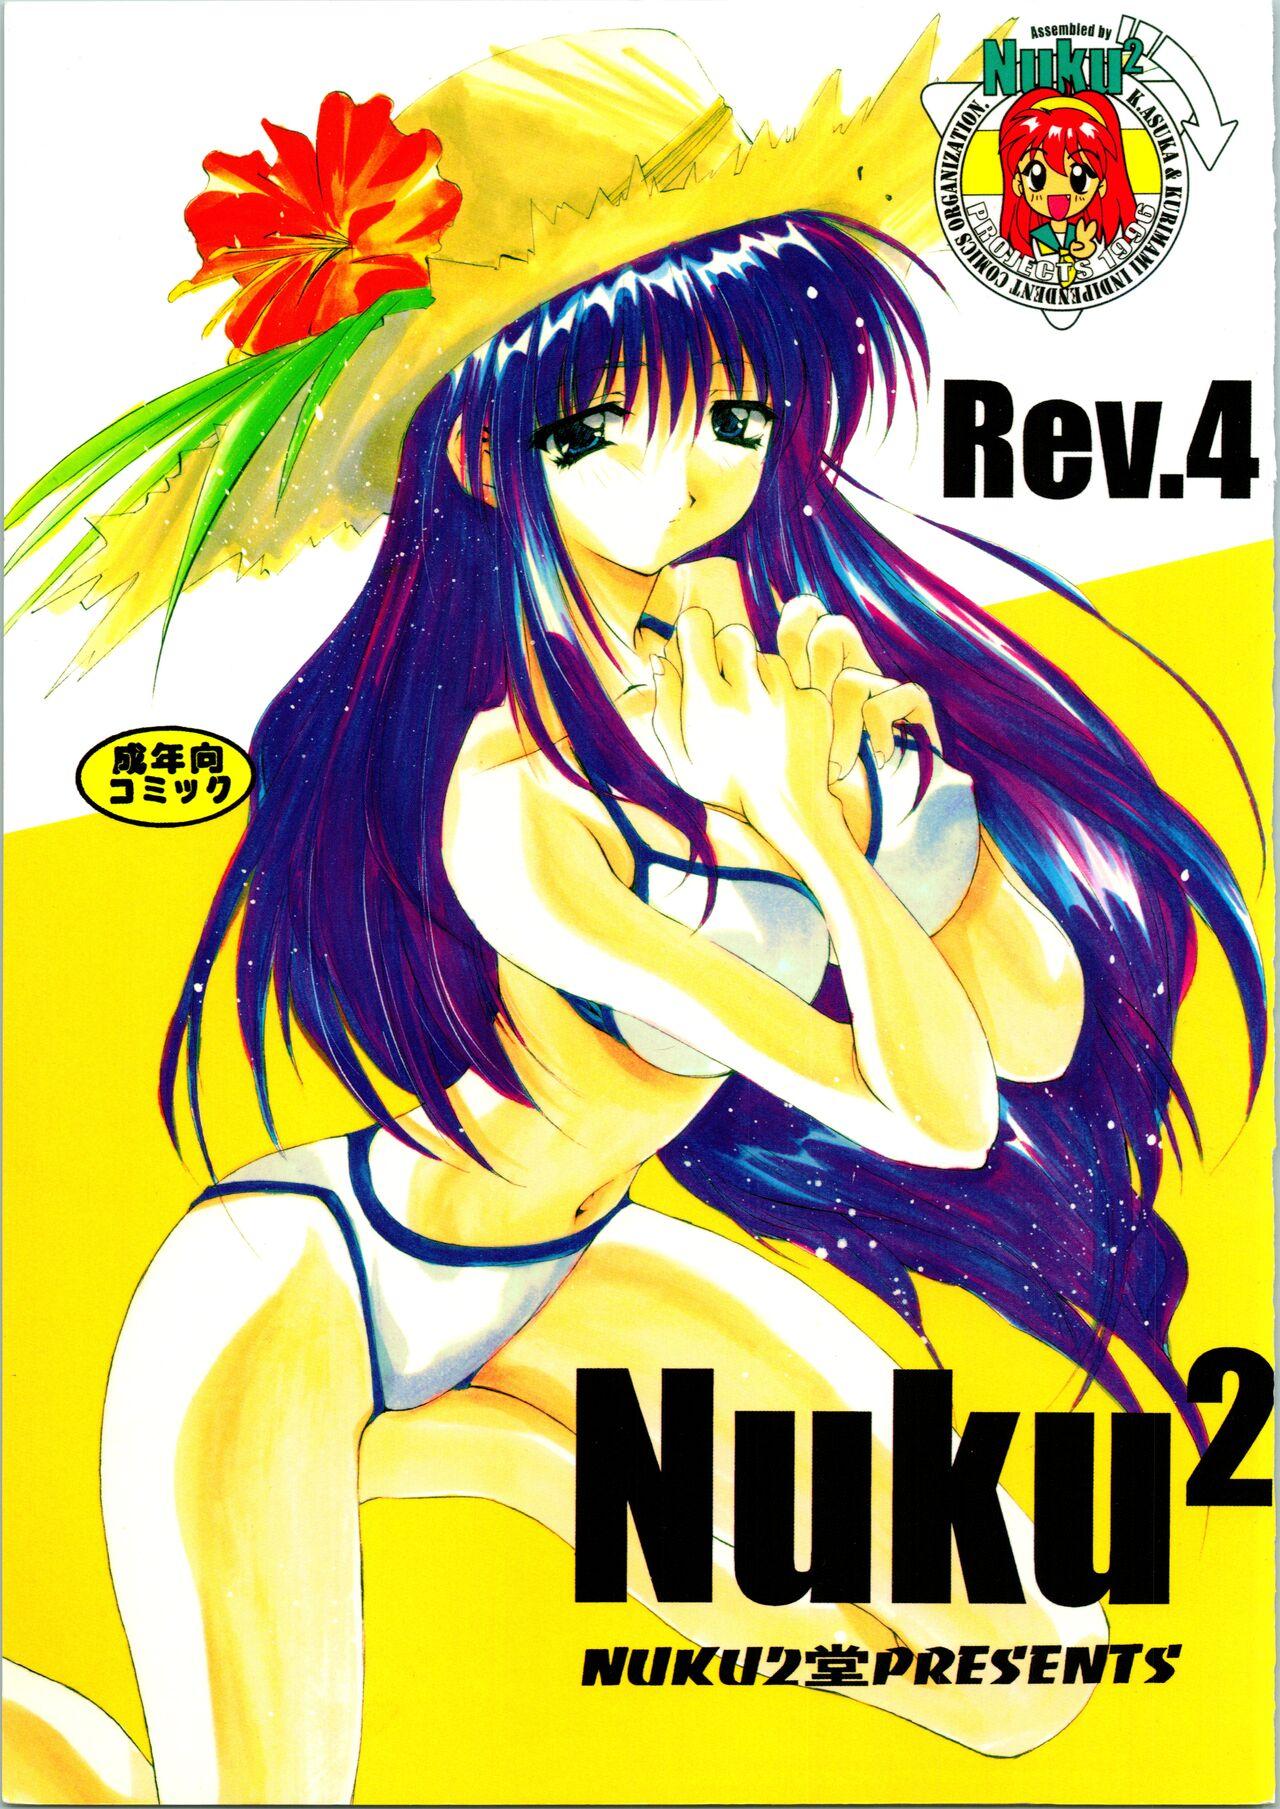 Nuku² Rev.4 0